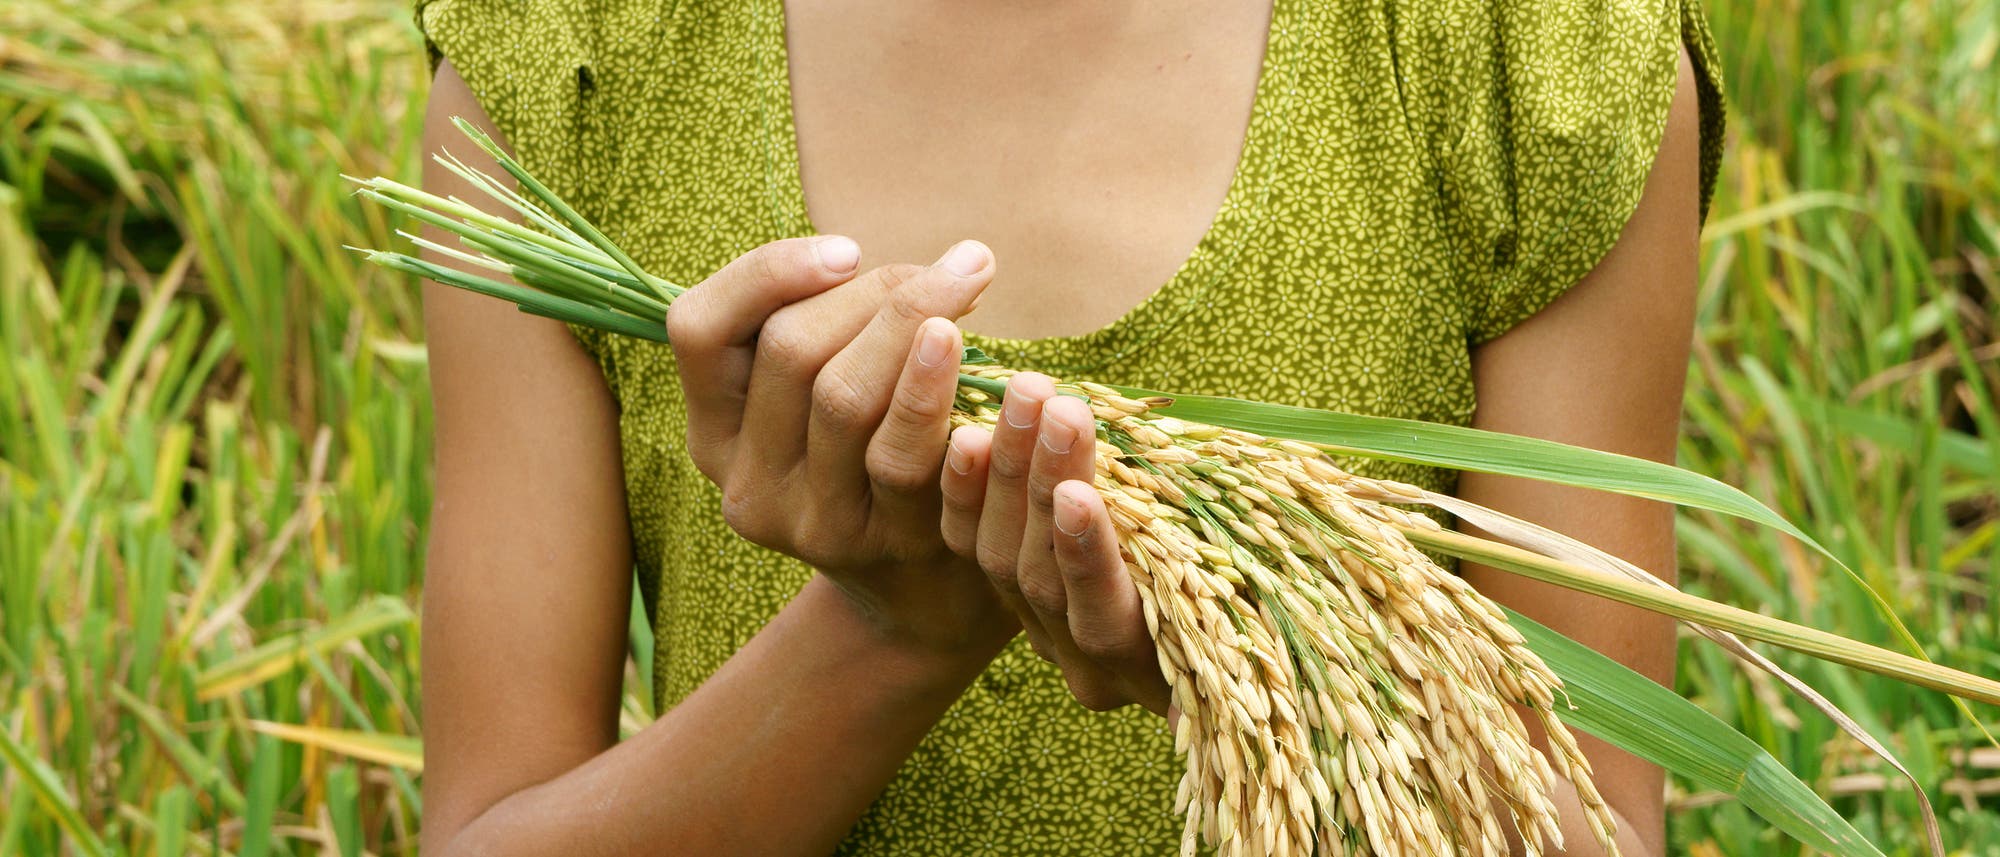 Reisgarben in den Händen einer kopflosen Frau